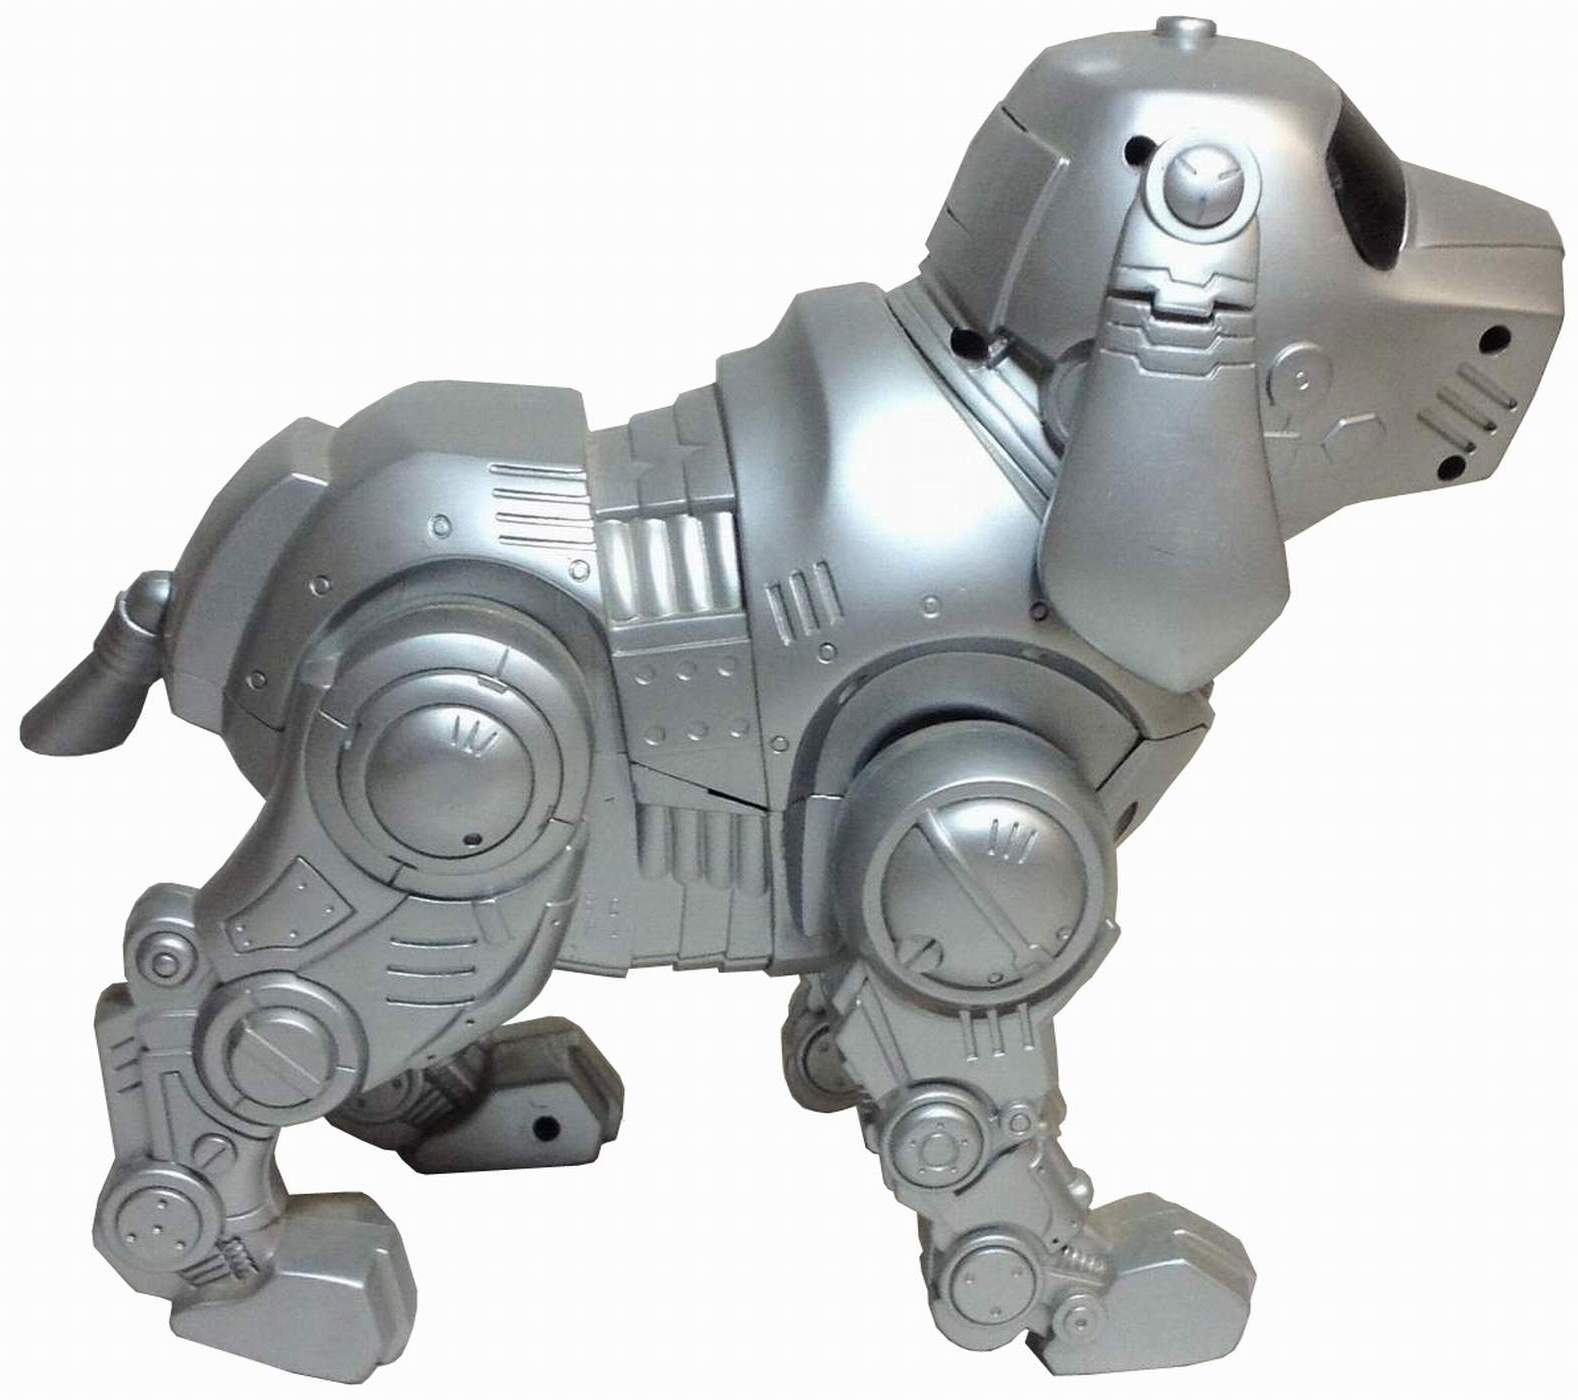 tekno dog toy